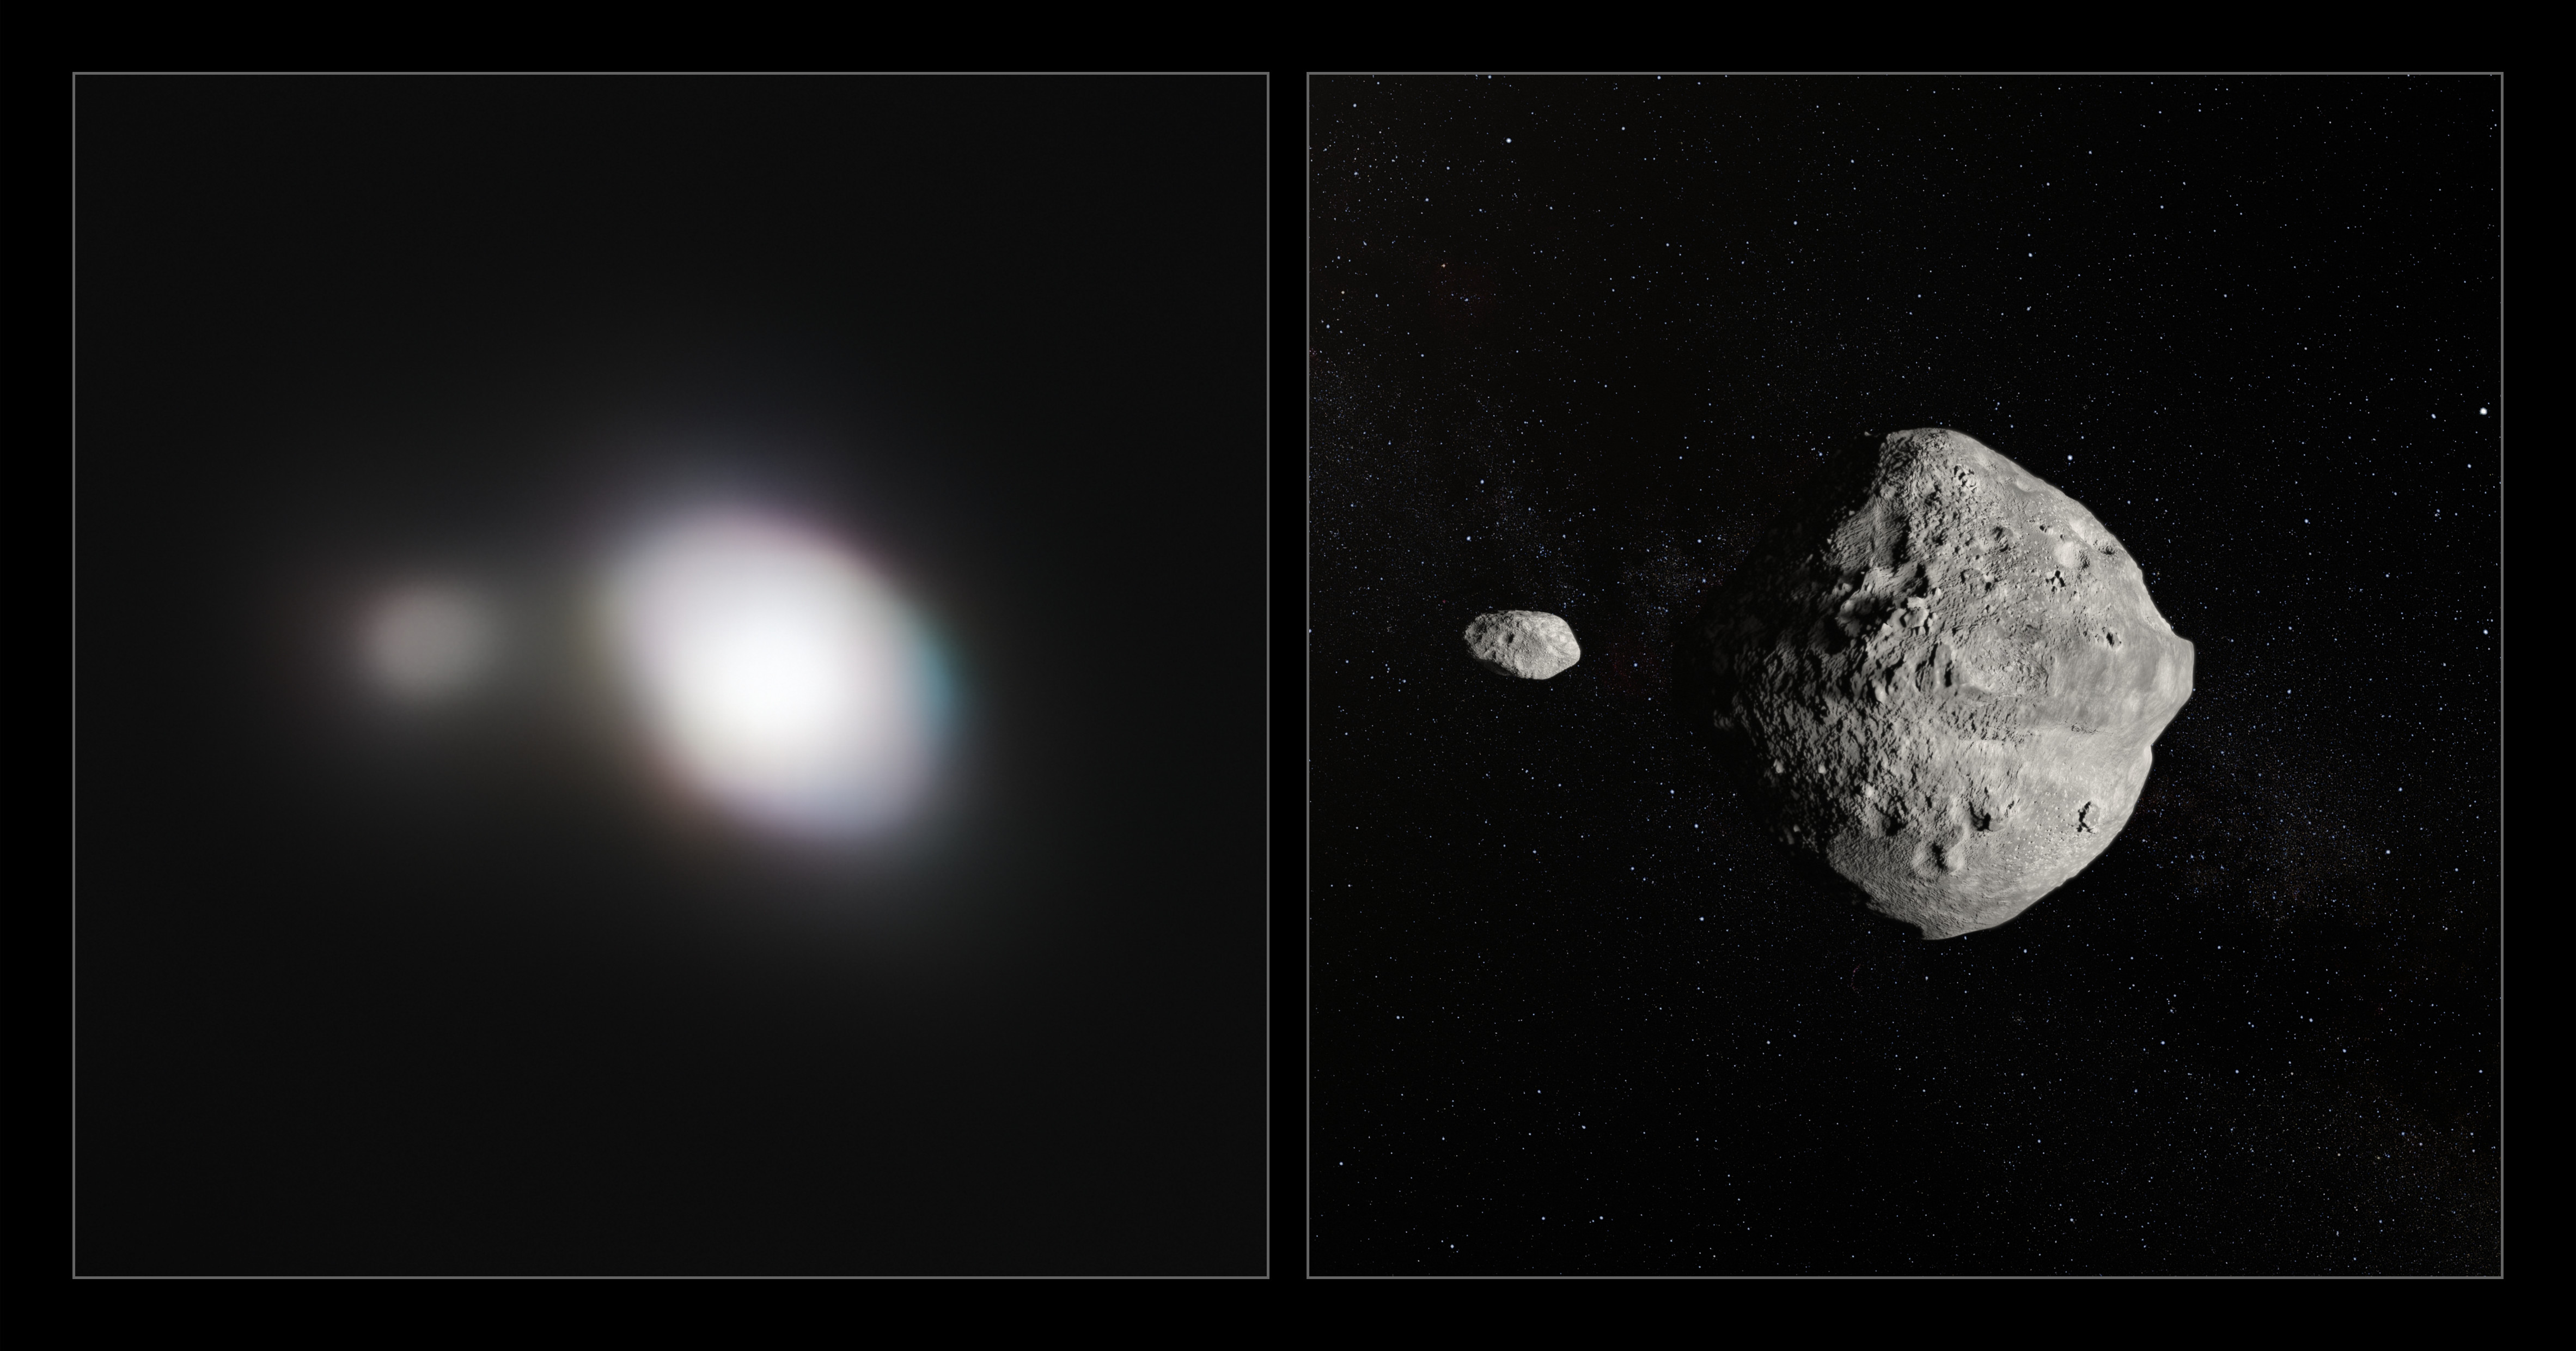 À gauche, image la plus détaillée de l'astéroïde 1999 KW4, qui possède sa propre lune, prise par l'instrument Sphere équipant le Very Large Telescope (VLT), à son passage au plus près de la Terre le 25 mai 2019. À droite, vue d'artiste de l'astéroïde et de son petit compagnon. © ESO